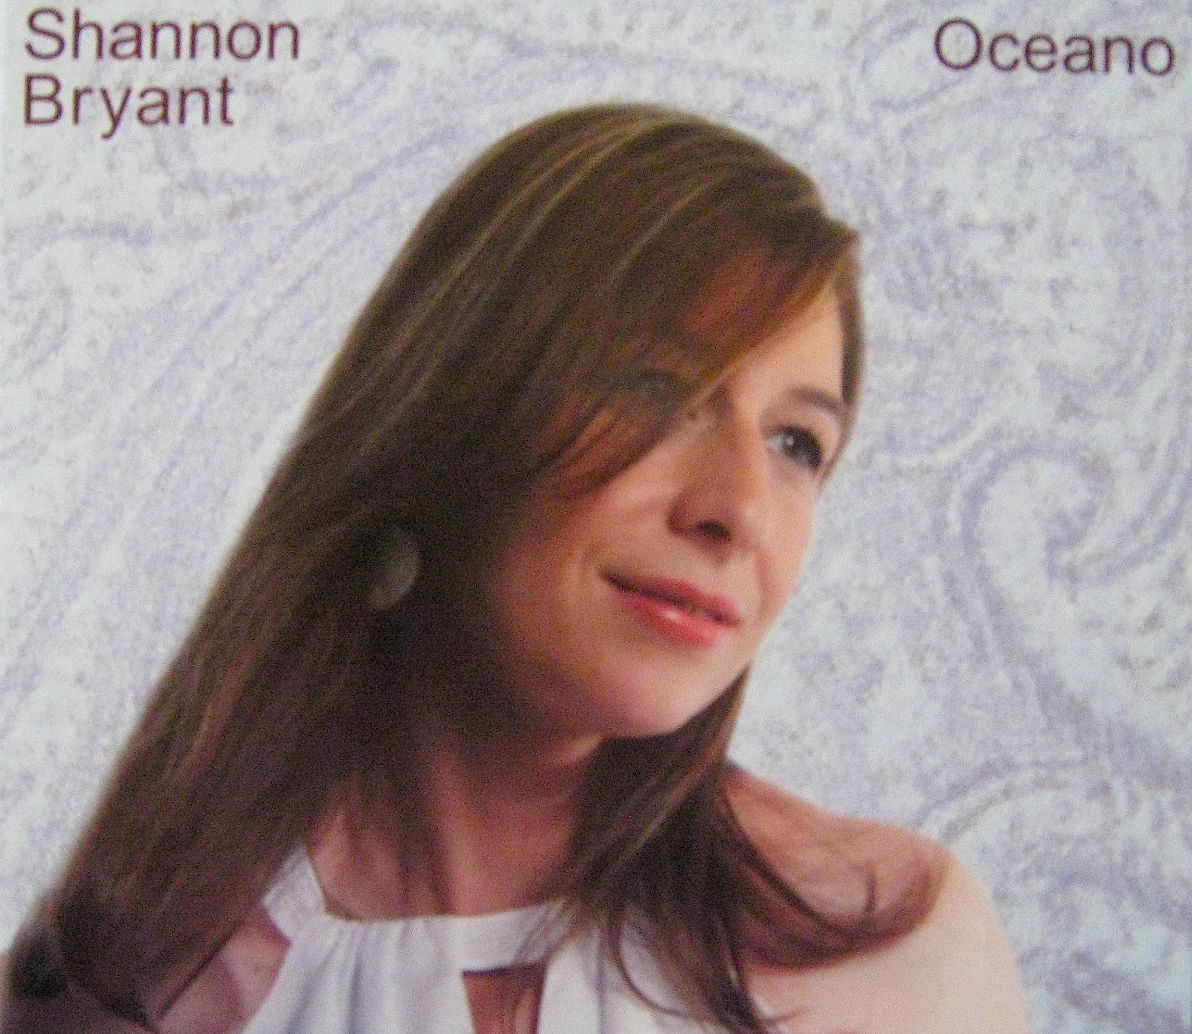 Shannon Bryant – Oceano